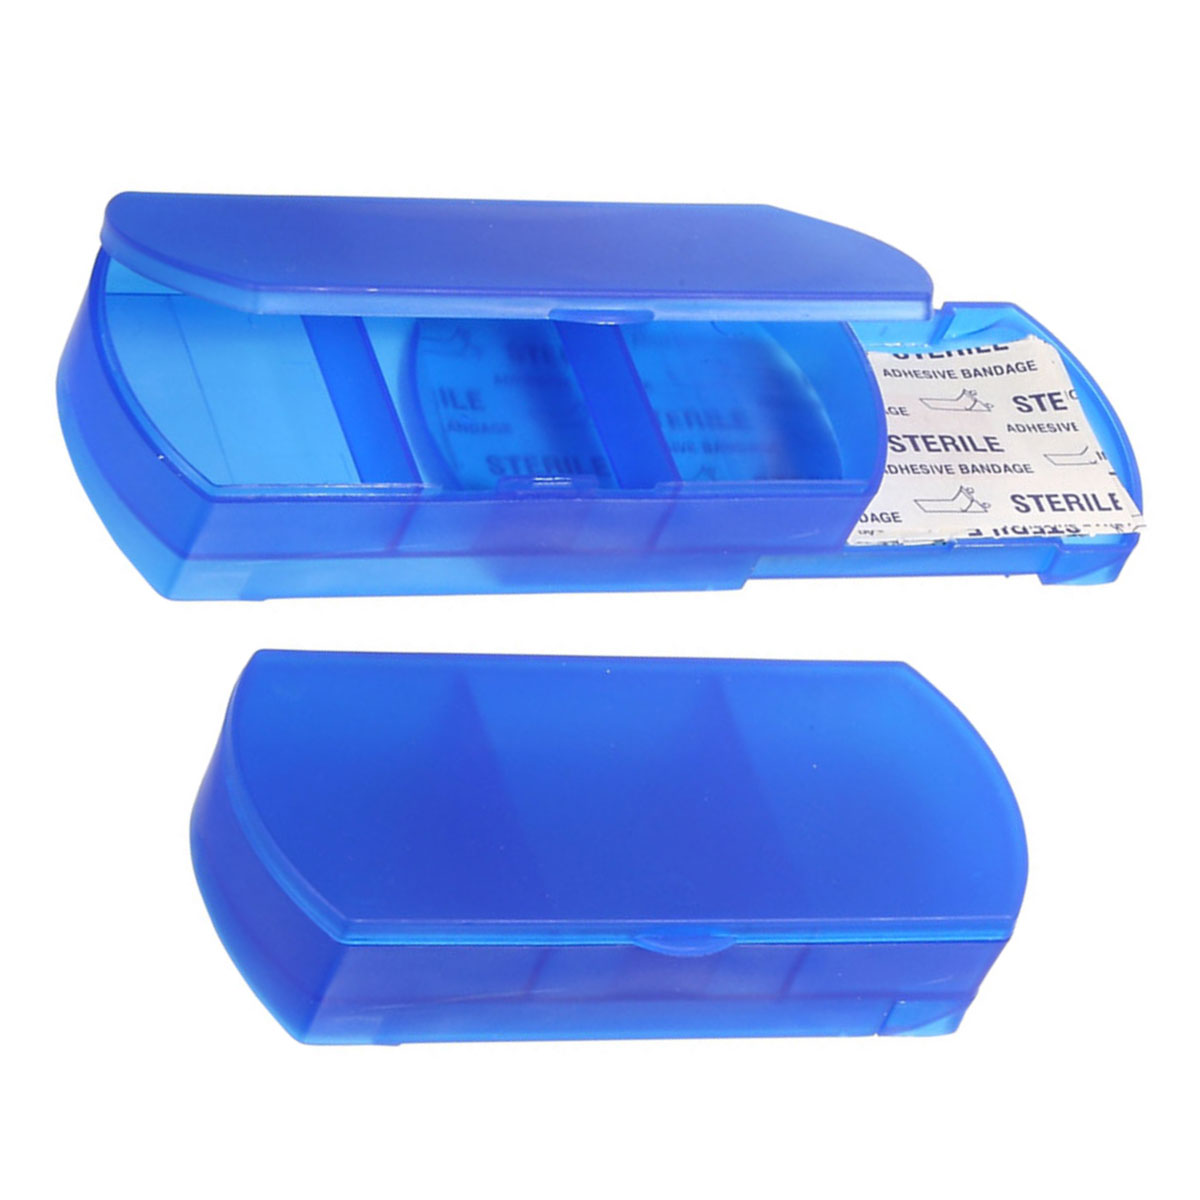 Blue Bandage Holder and Pillbox